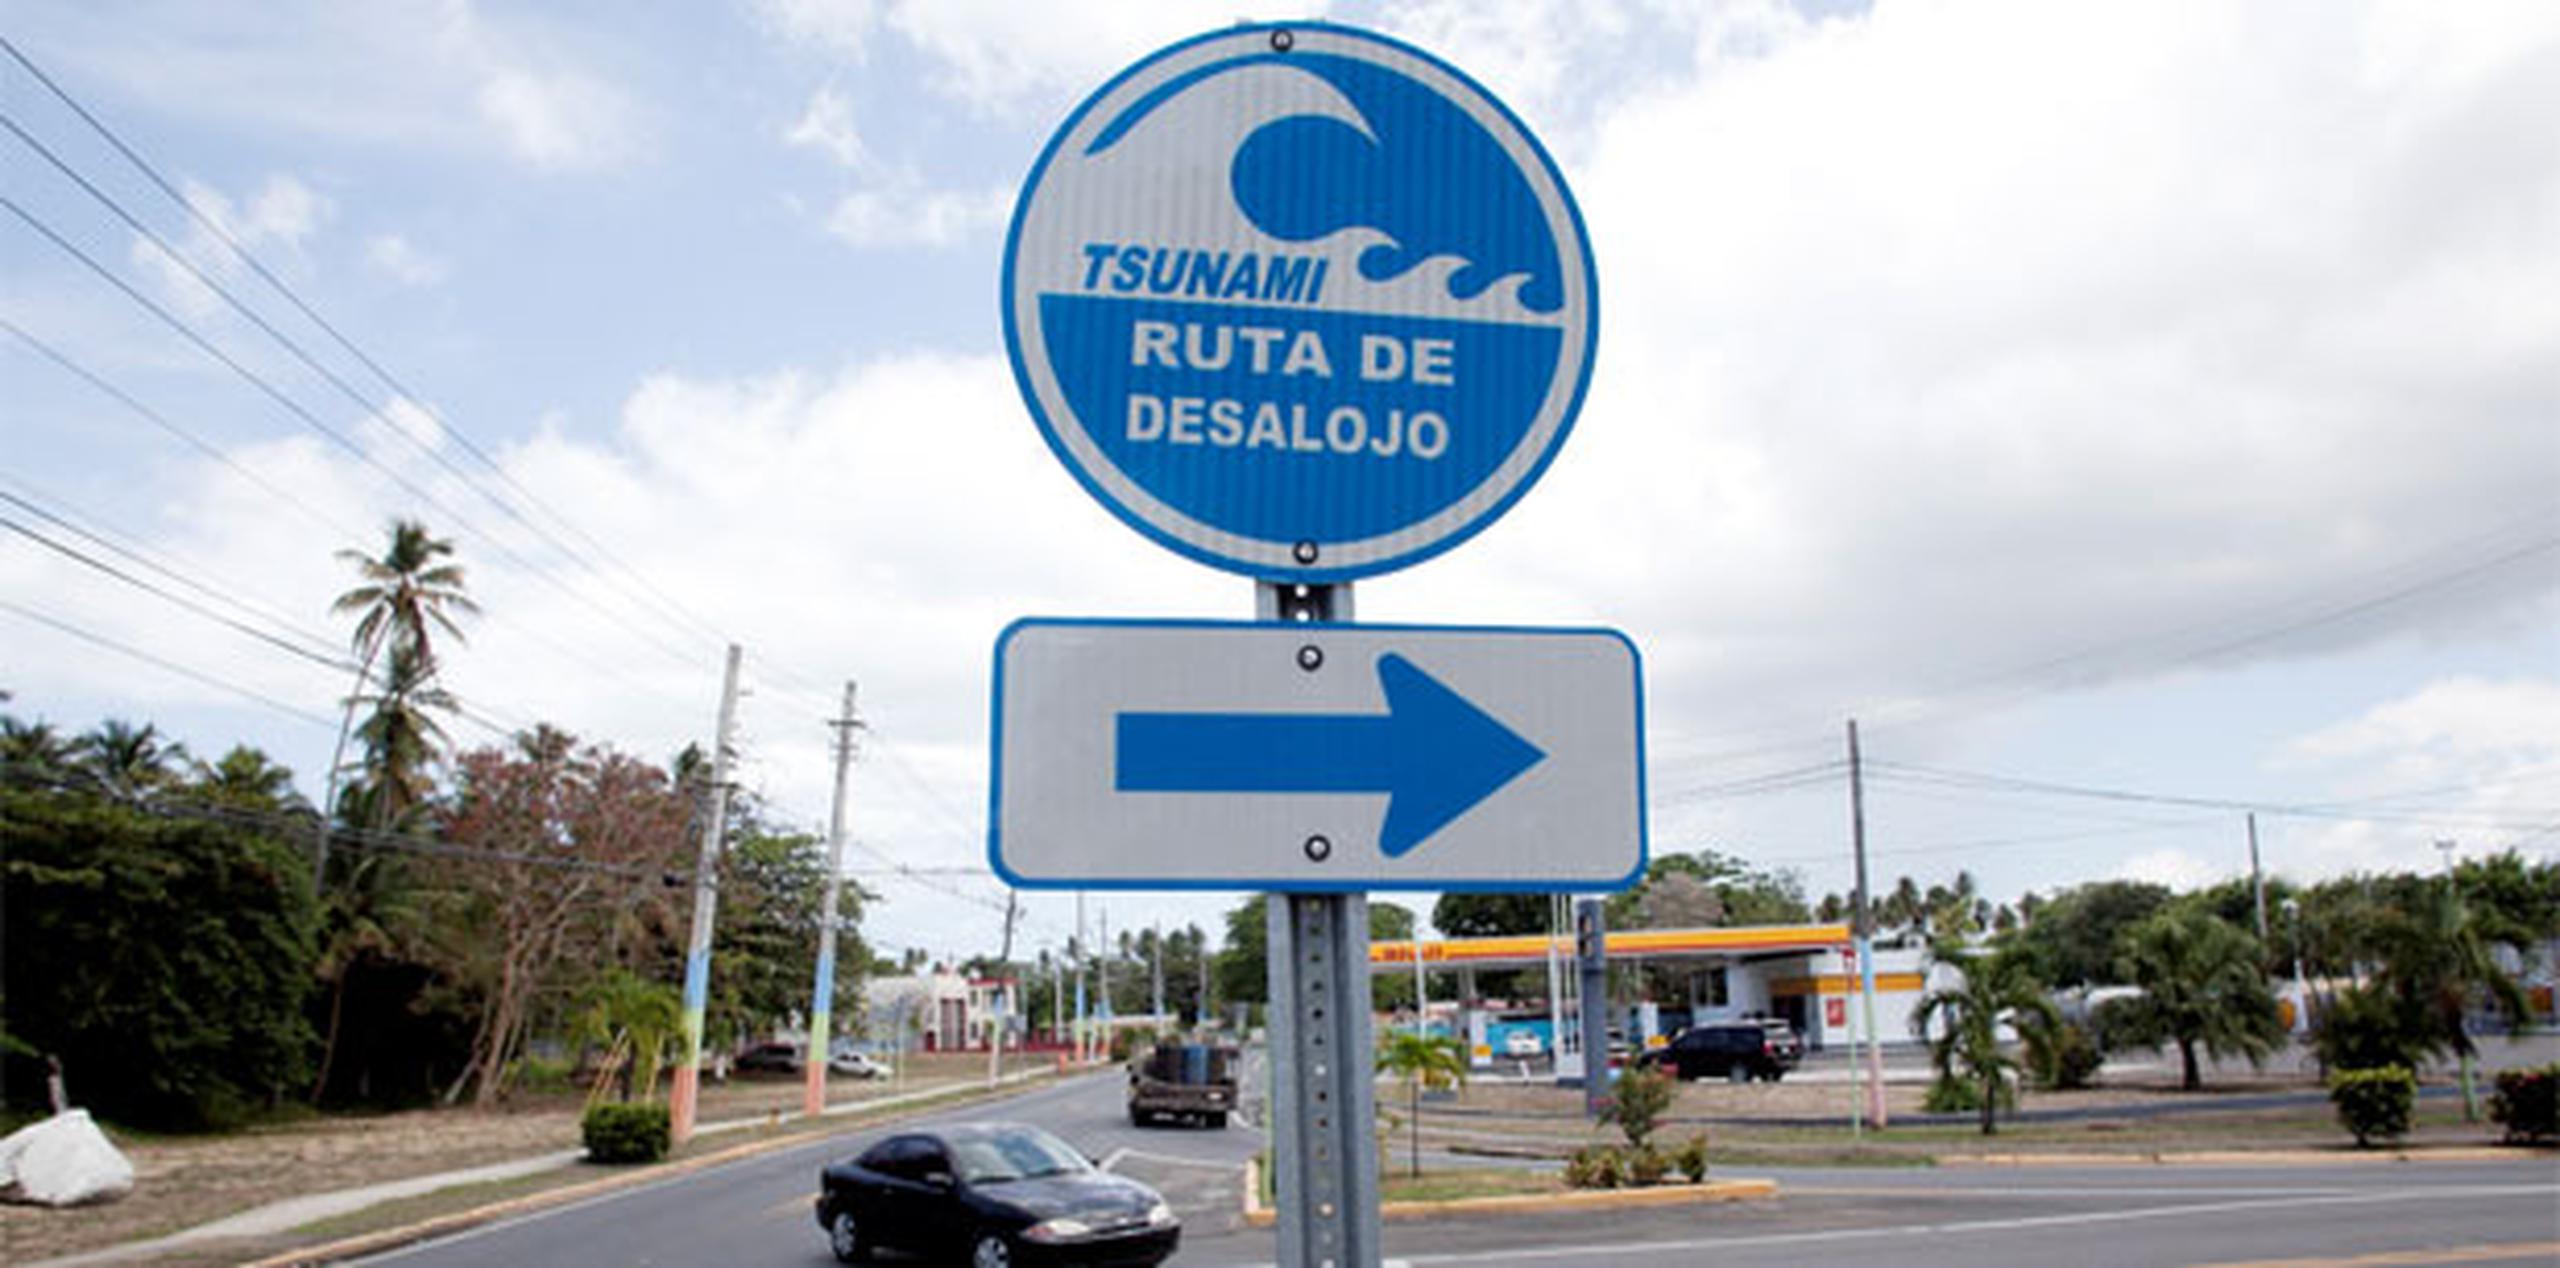 Puerto Rico tiene 46 municipios que han sido reconocidos como preparados para tsunamis por el Servicio Nacional de Meteorología, 44 de estos son costeros. (Archivo)